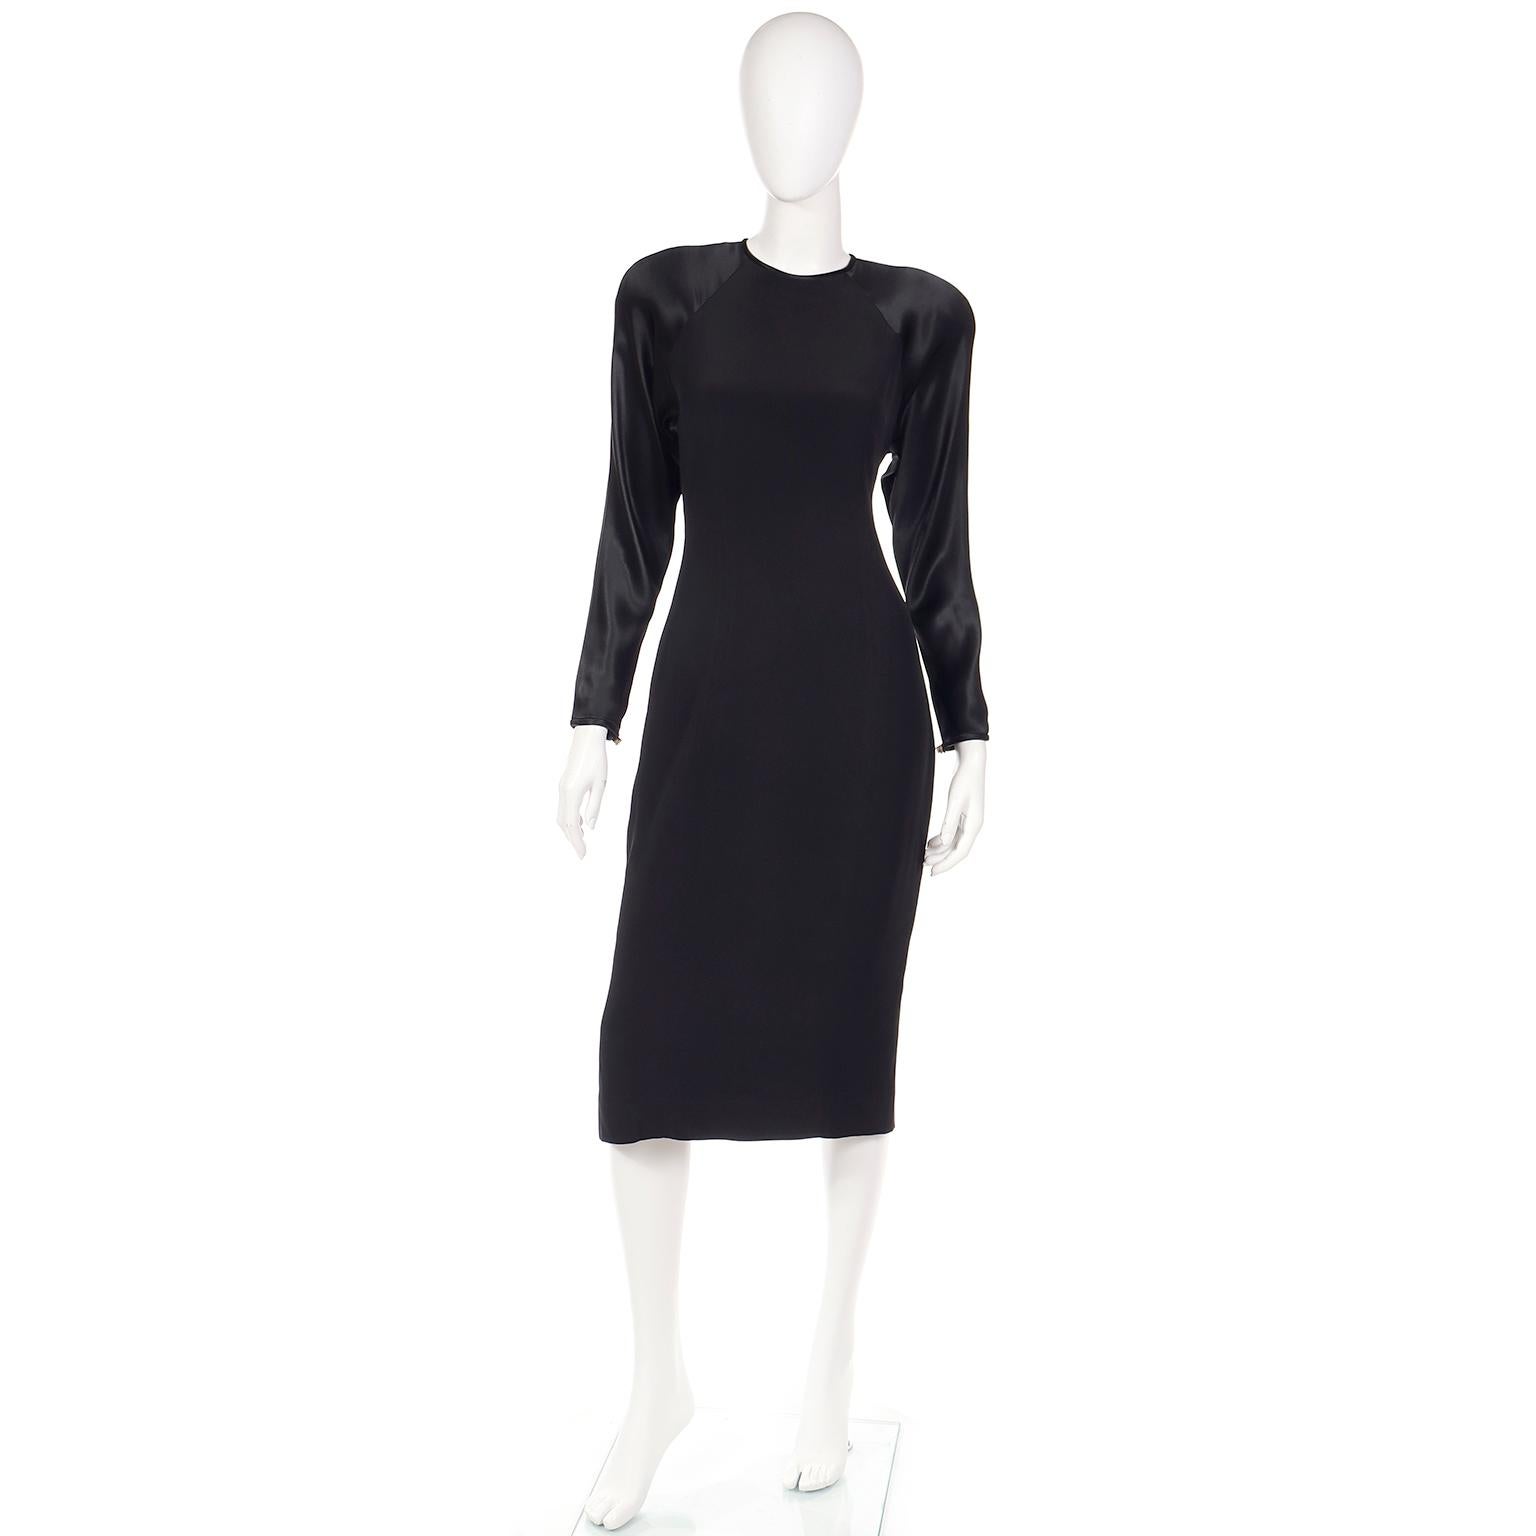 Il s'agit d'une robe noire Albert Nipon des années 1980 avec une touche des années 1940. Il présente une finition mate avec des manches et un dos raglan en satin. Le dos se ferme à l'aide de gros boutons en strass et de deux boutons-pression sur le